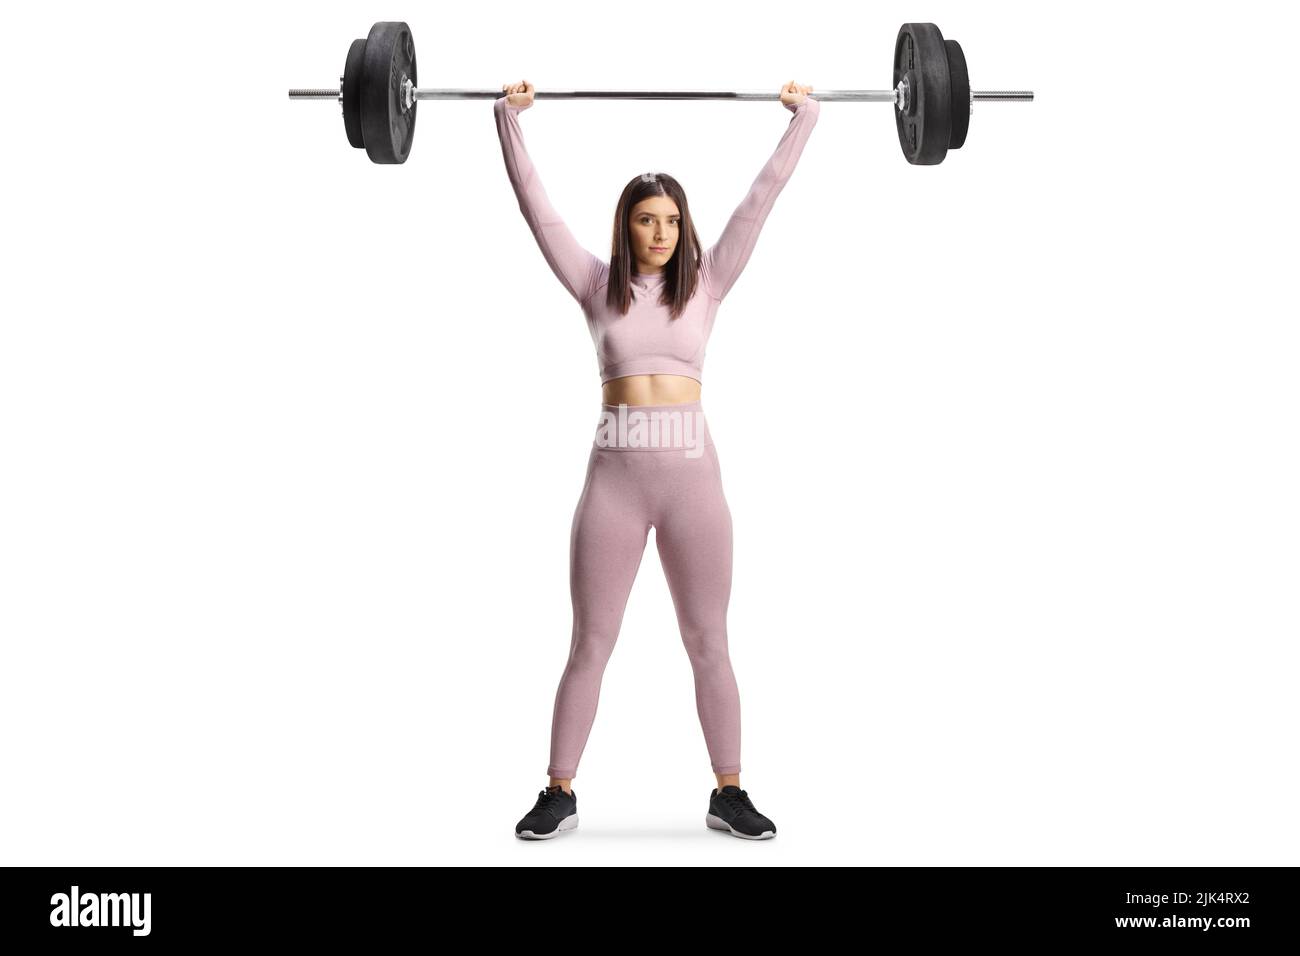 Retrato completo de una mujer joven fuerte que ejerce levantamiento de pesas aislada sobre fondo blanco Foto de stock